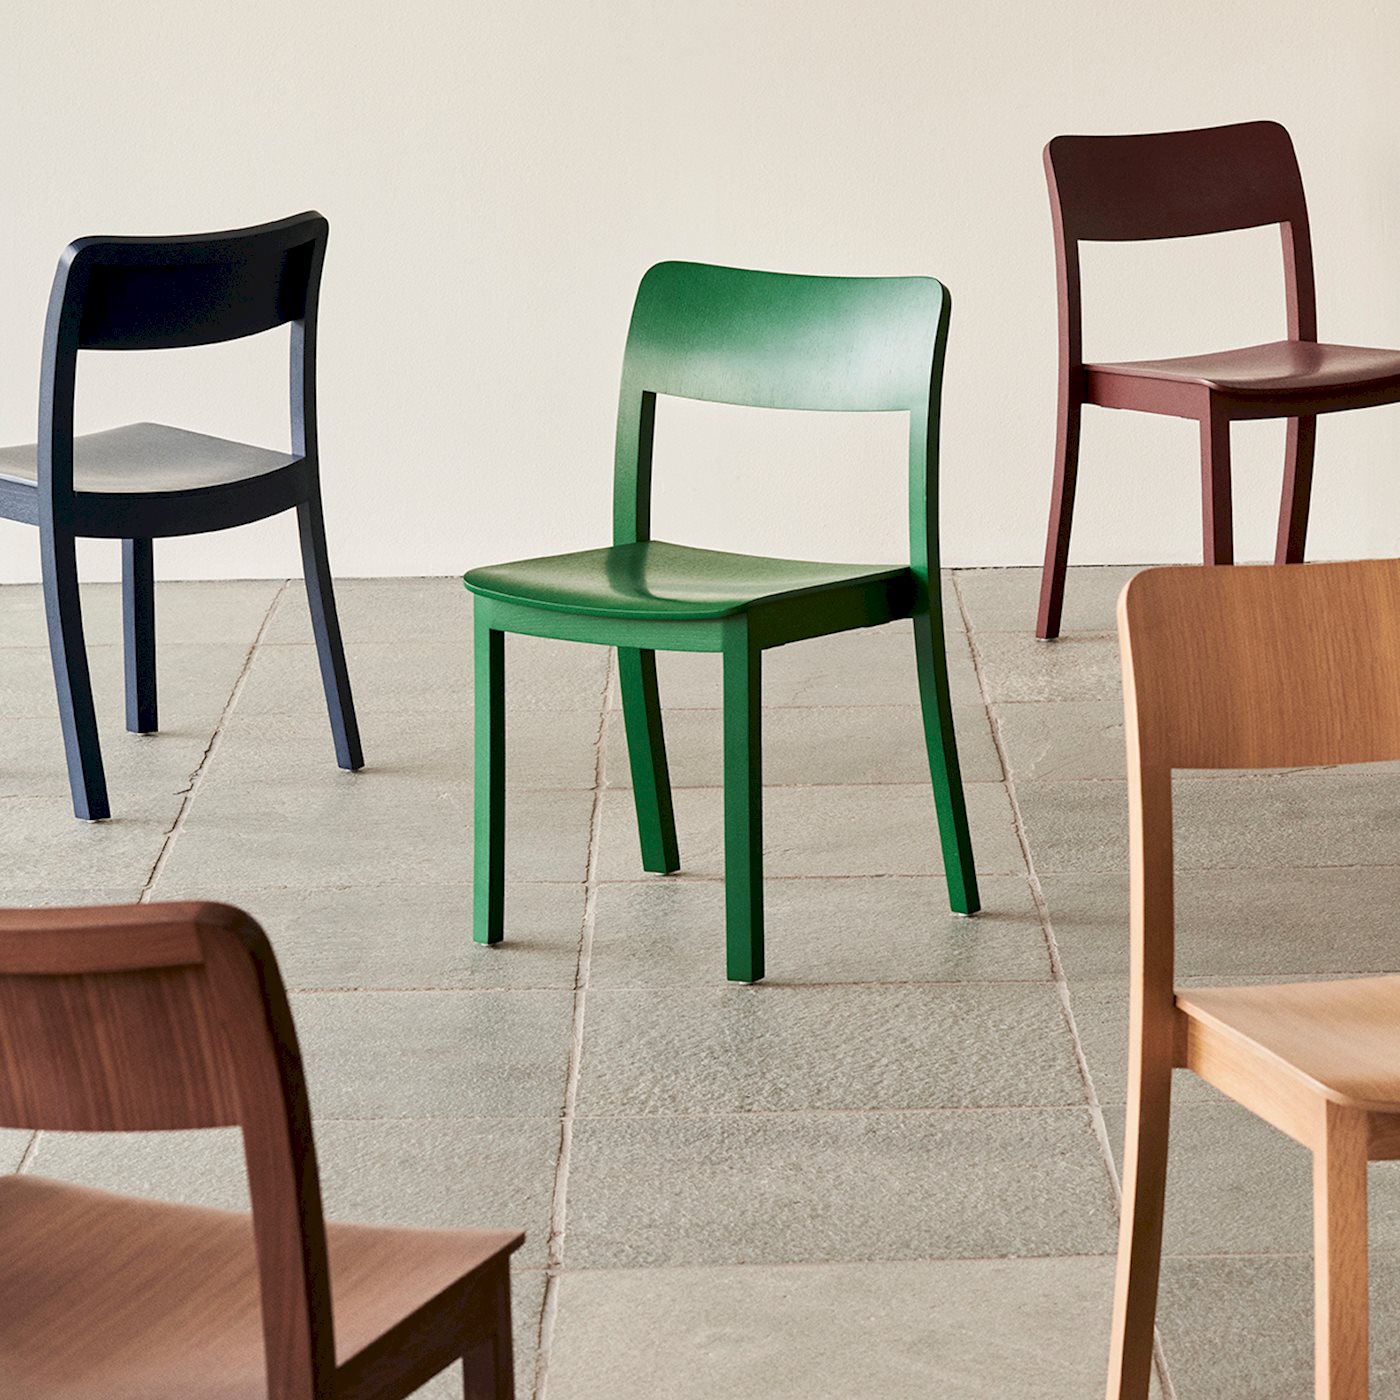 Spisestolen Pastis Chair fra Hay er laget for å være tidløs og sterk, og har en solid konstruksjon med et elegant utseende. Den er perfekt for å nyte livet, spise middag og sosialisere. Den finnes i ulike farger og tretyper og passer godt inn i ulike typer hjem og interiører.